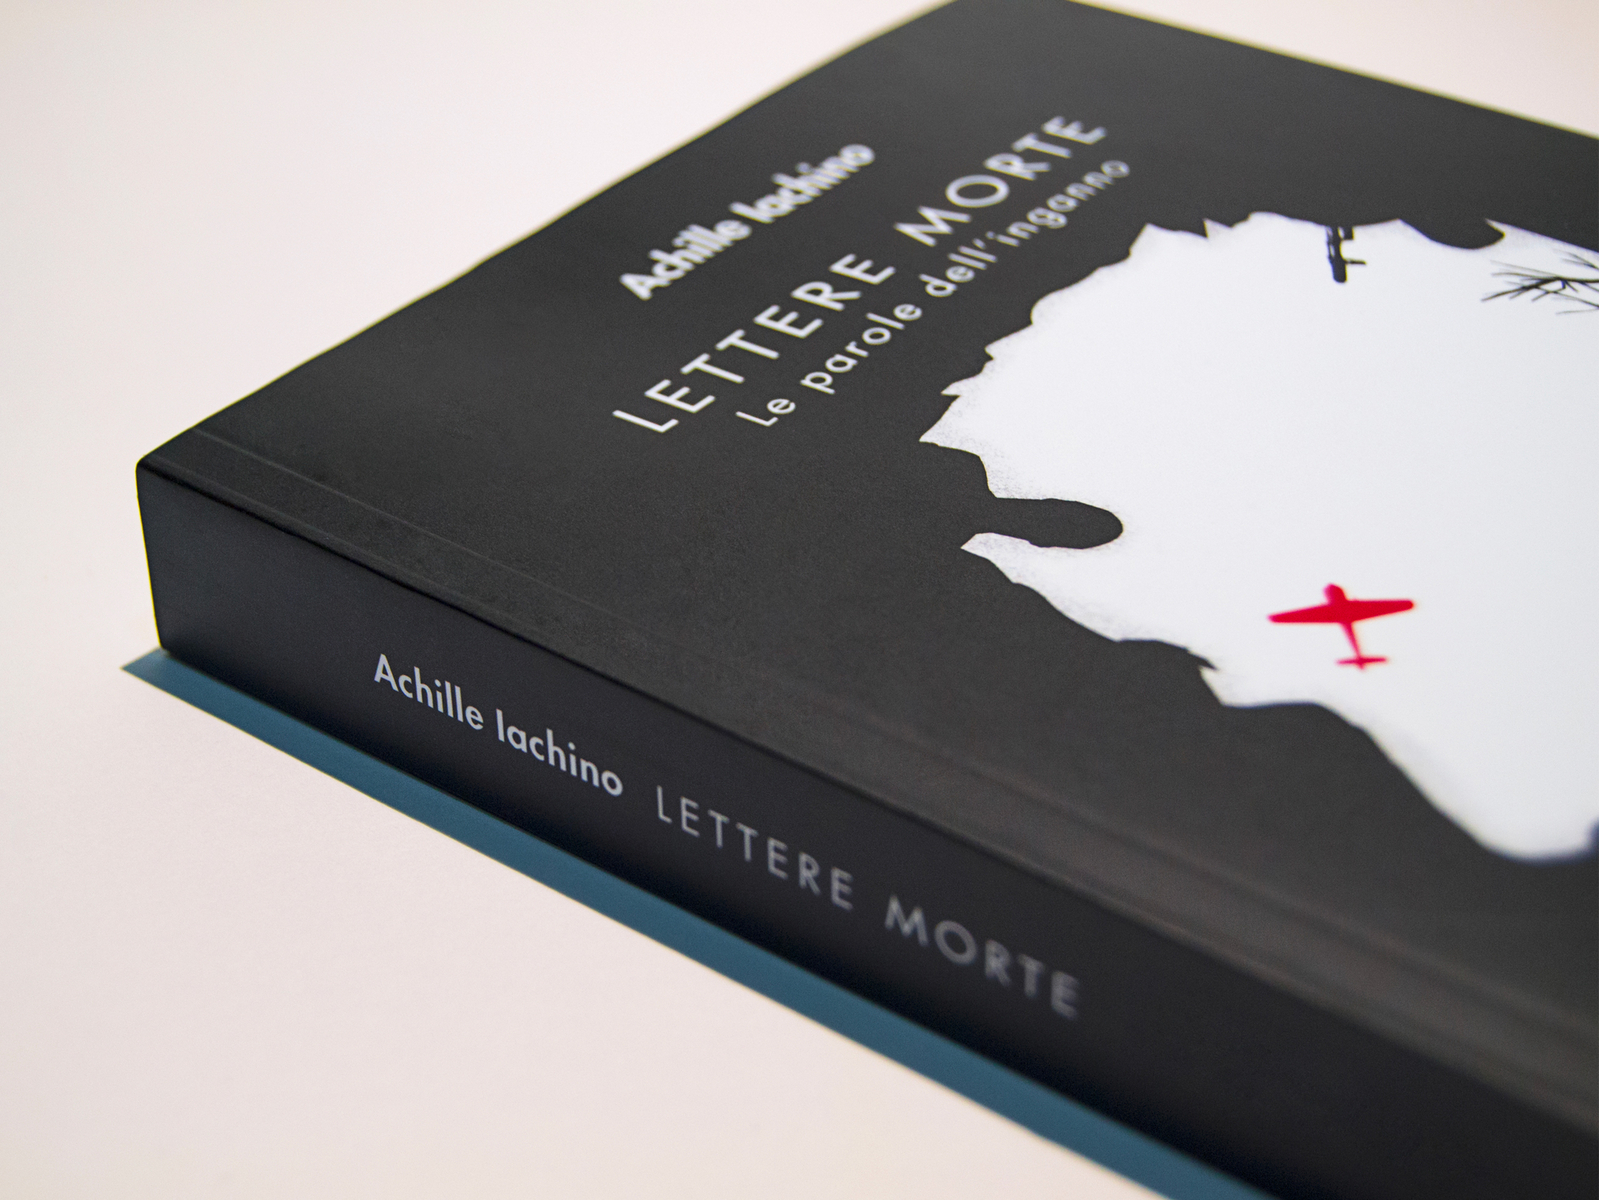 Lettere morte | Book design by Alessio Paniccia on Dribbble